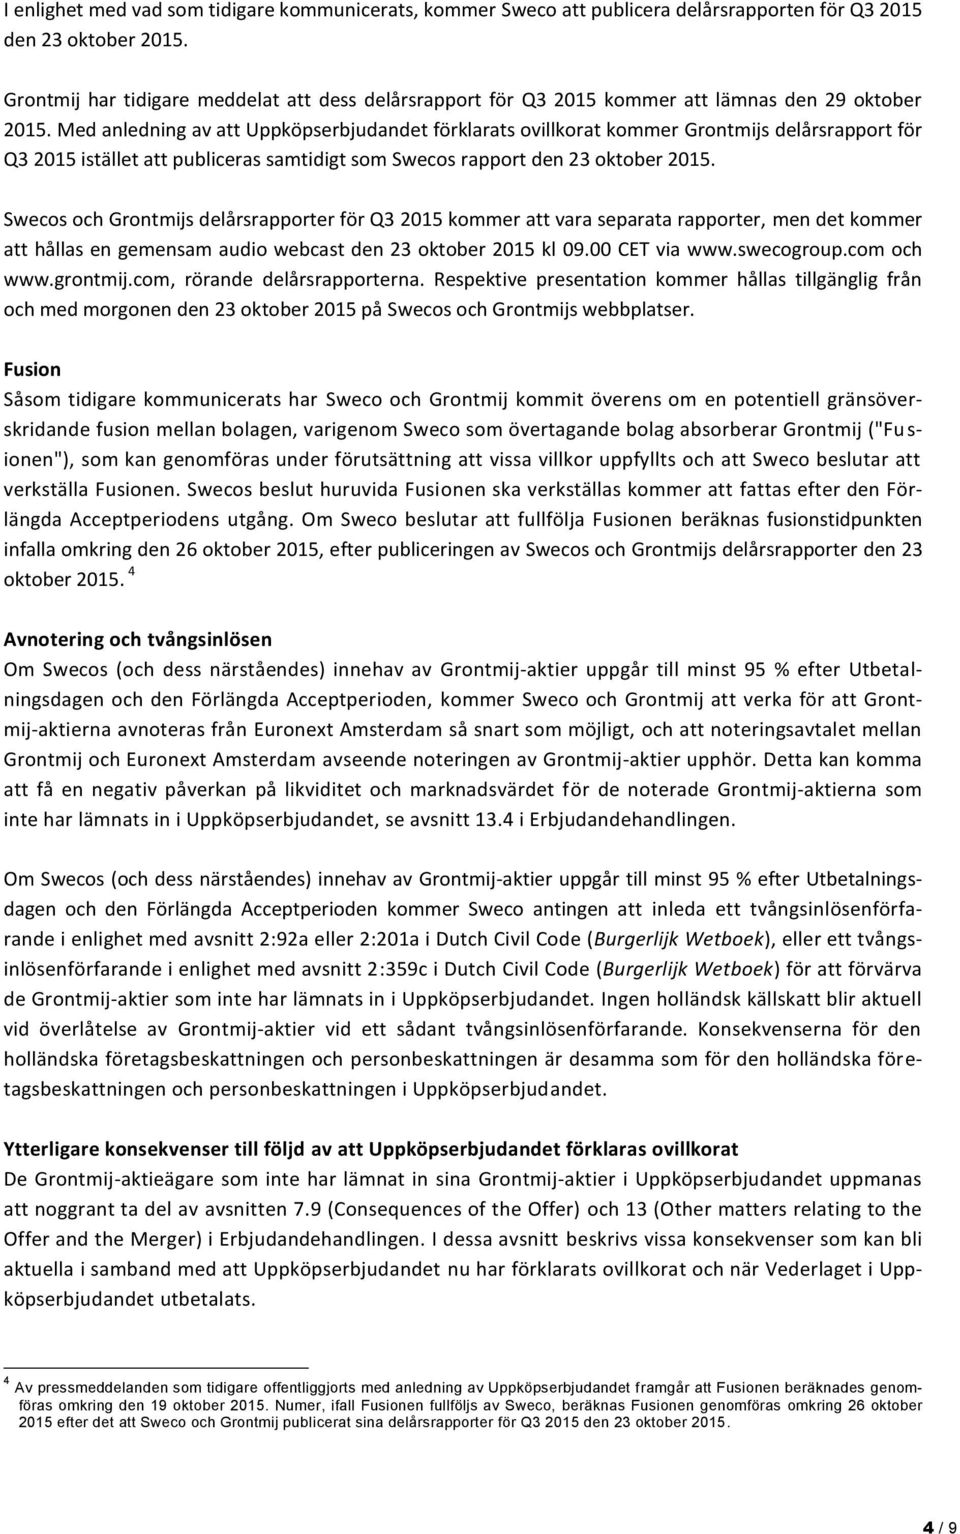 Med anledning av att Uppköpserbjudandet förklarats ovillkorat kommer Grontmijs delårsrapport för Q3 2015 istället att publiceras samtidigt som Swecos rapport den 23 oktober 2015.